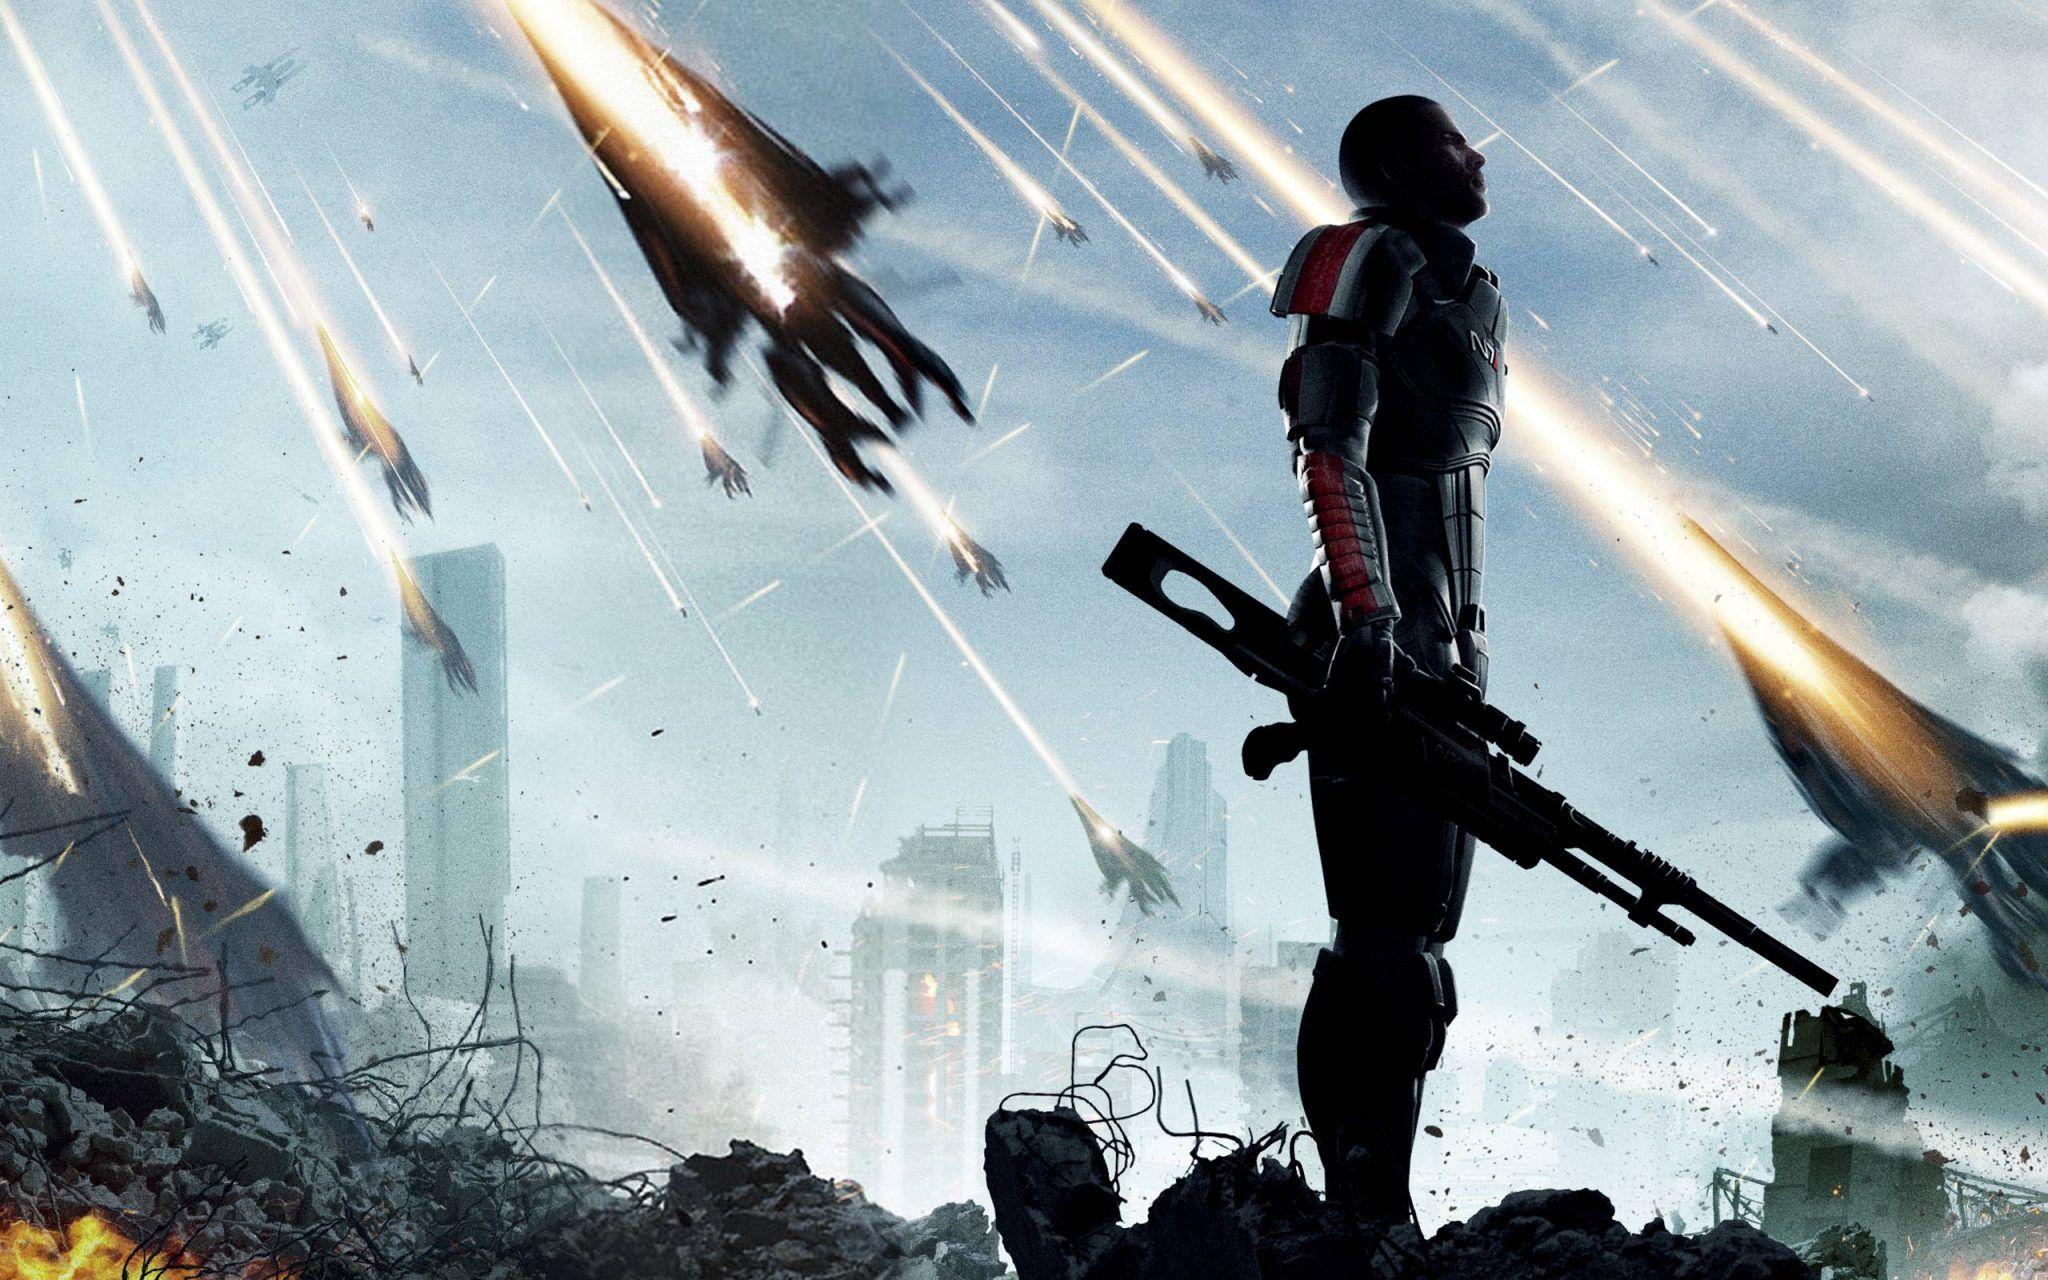 free for ios download Mass Effect™ издание Legendary